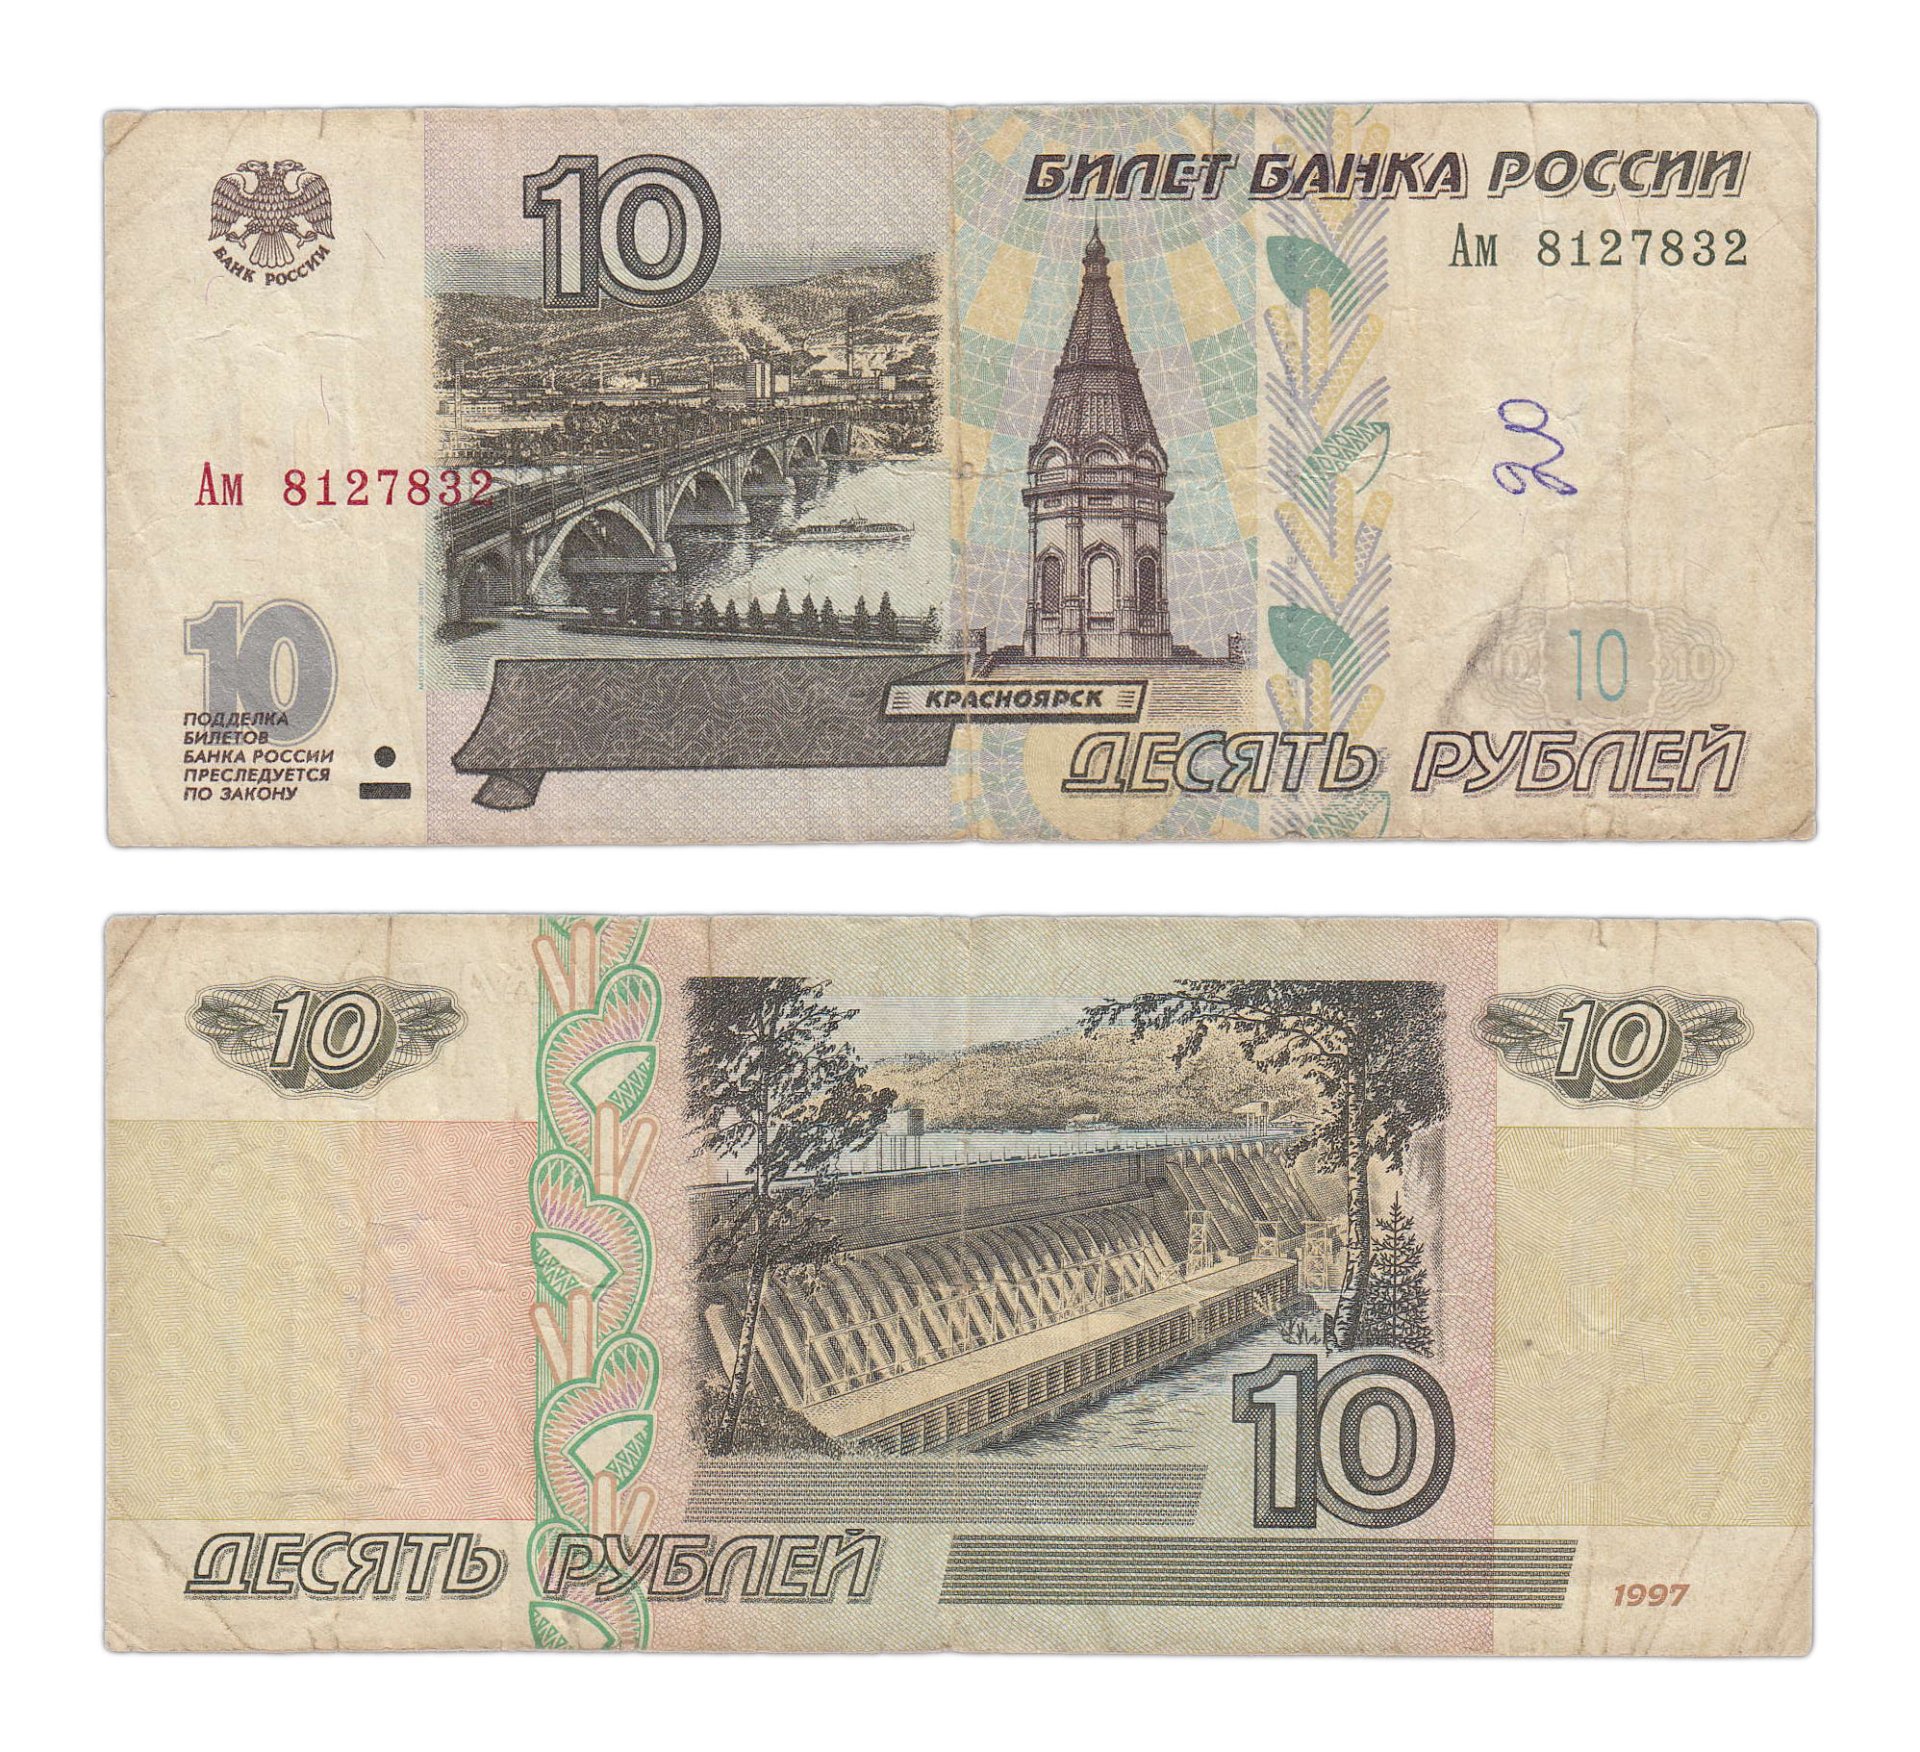 10 Рублей банкнота. 10 Рублей бумажные. 10 Рублей 1997 года. Российские купюры 10 рублей. Купюры 1997г